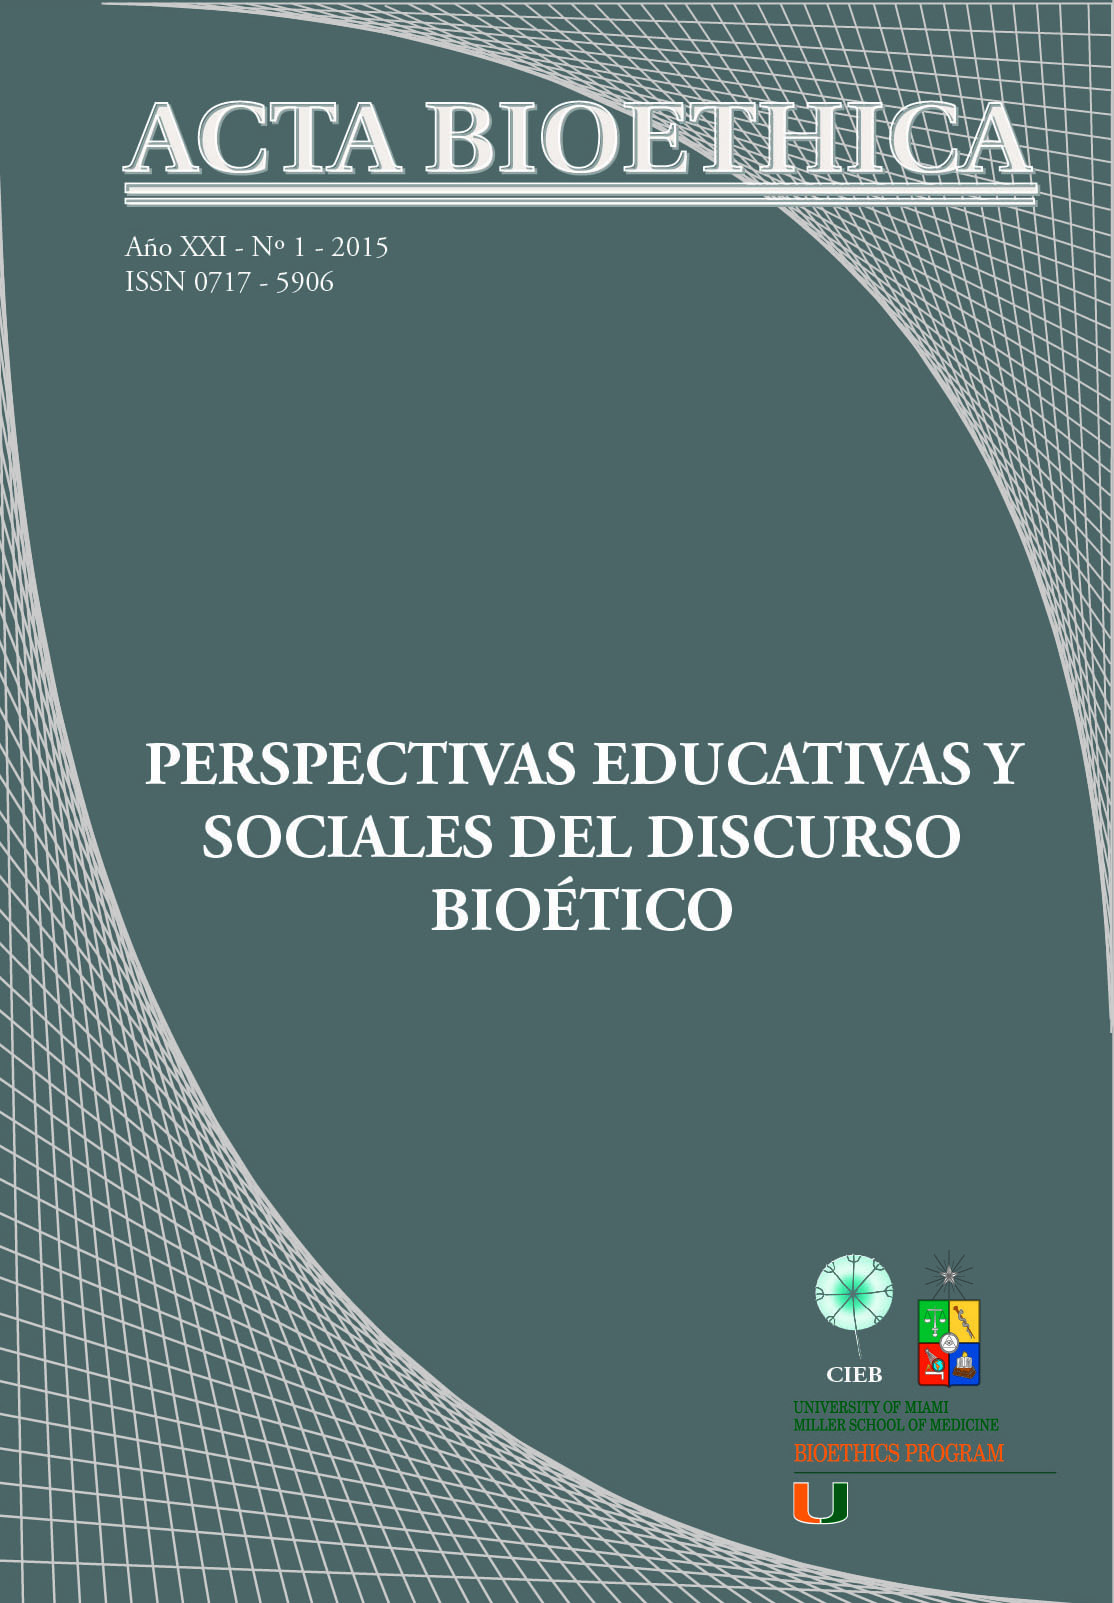 												Ver Vol. 21 Núm. 1 (2015): Perspectivas Educativas y Sociales del Discurso Bioético
											